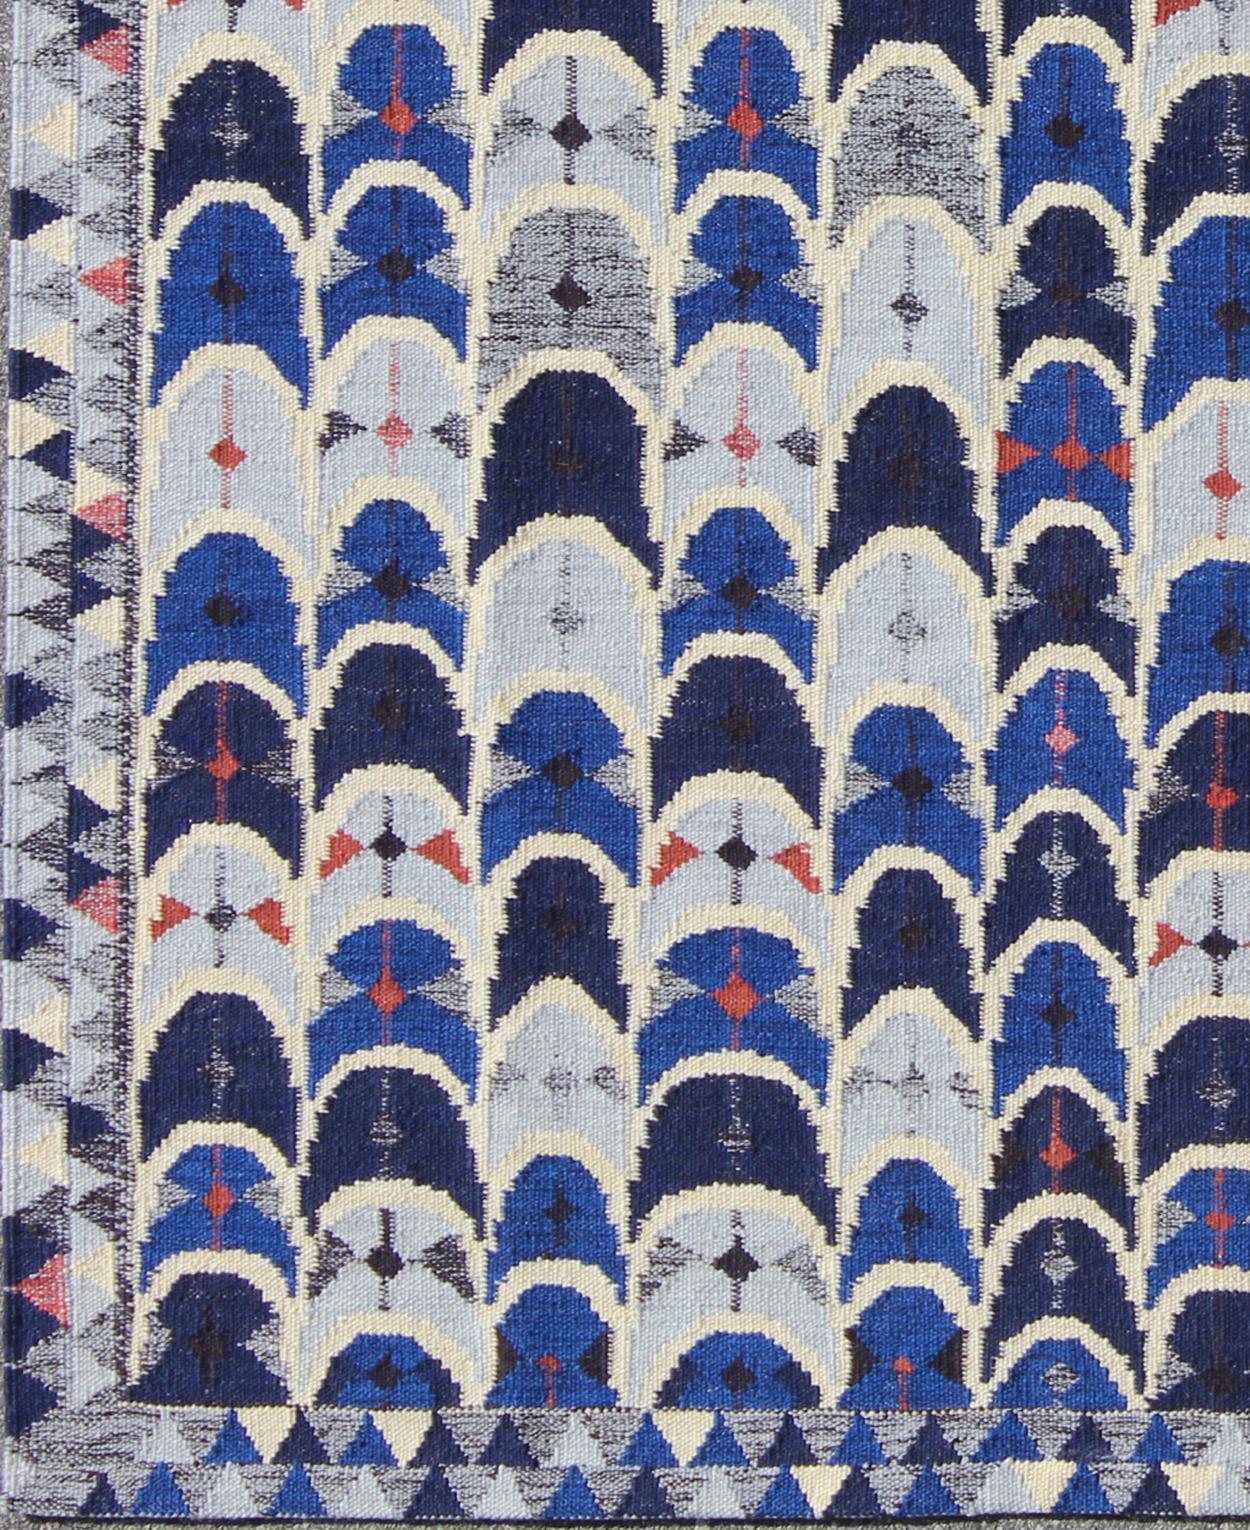 Scandinavian Modern Contemporary Scandinavian Design Flat-Weave Rug in Blue, Charcoal, Red